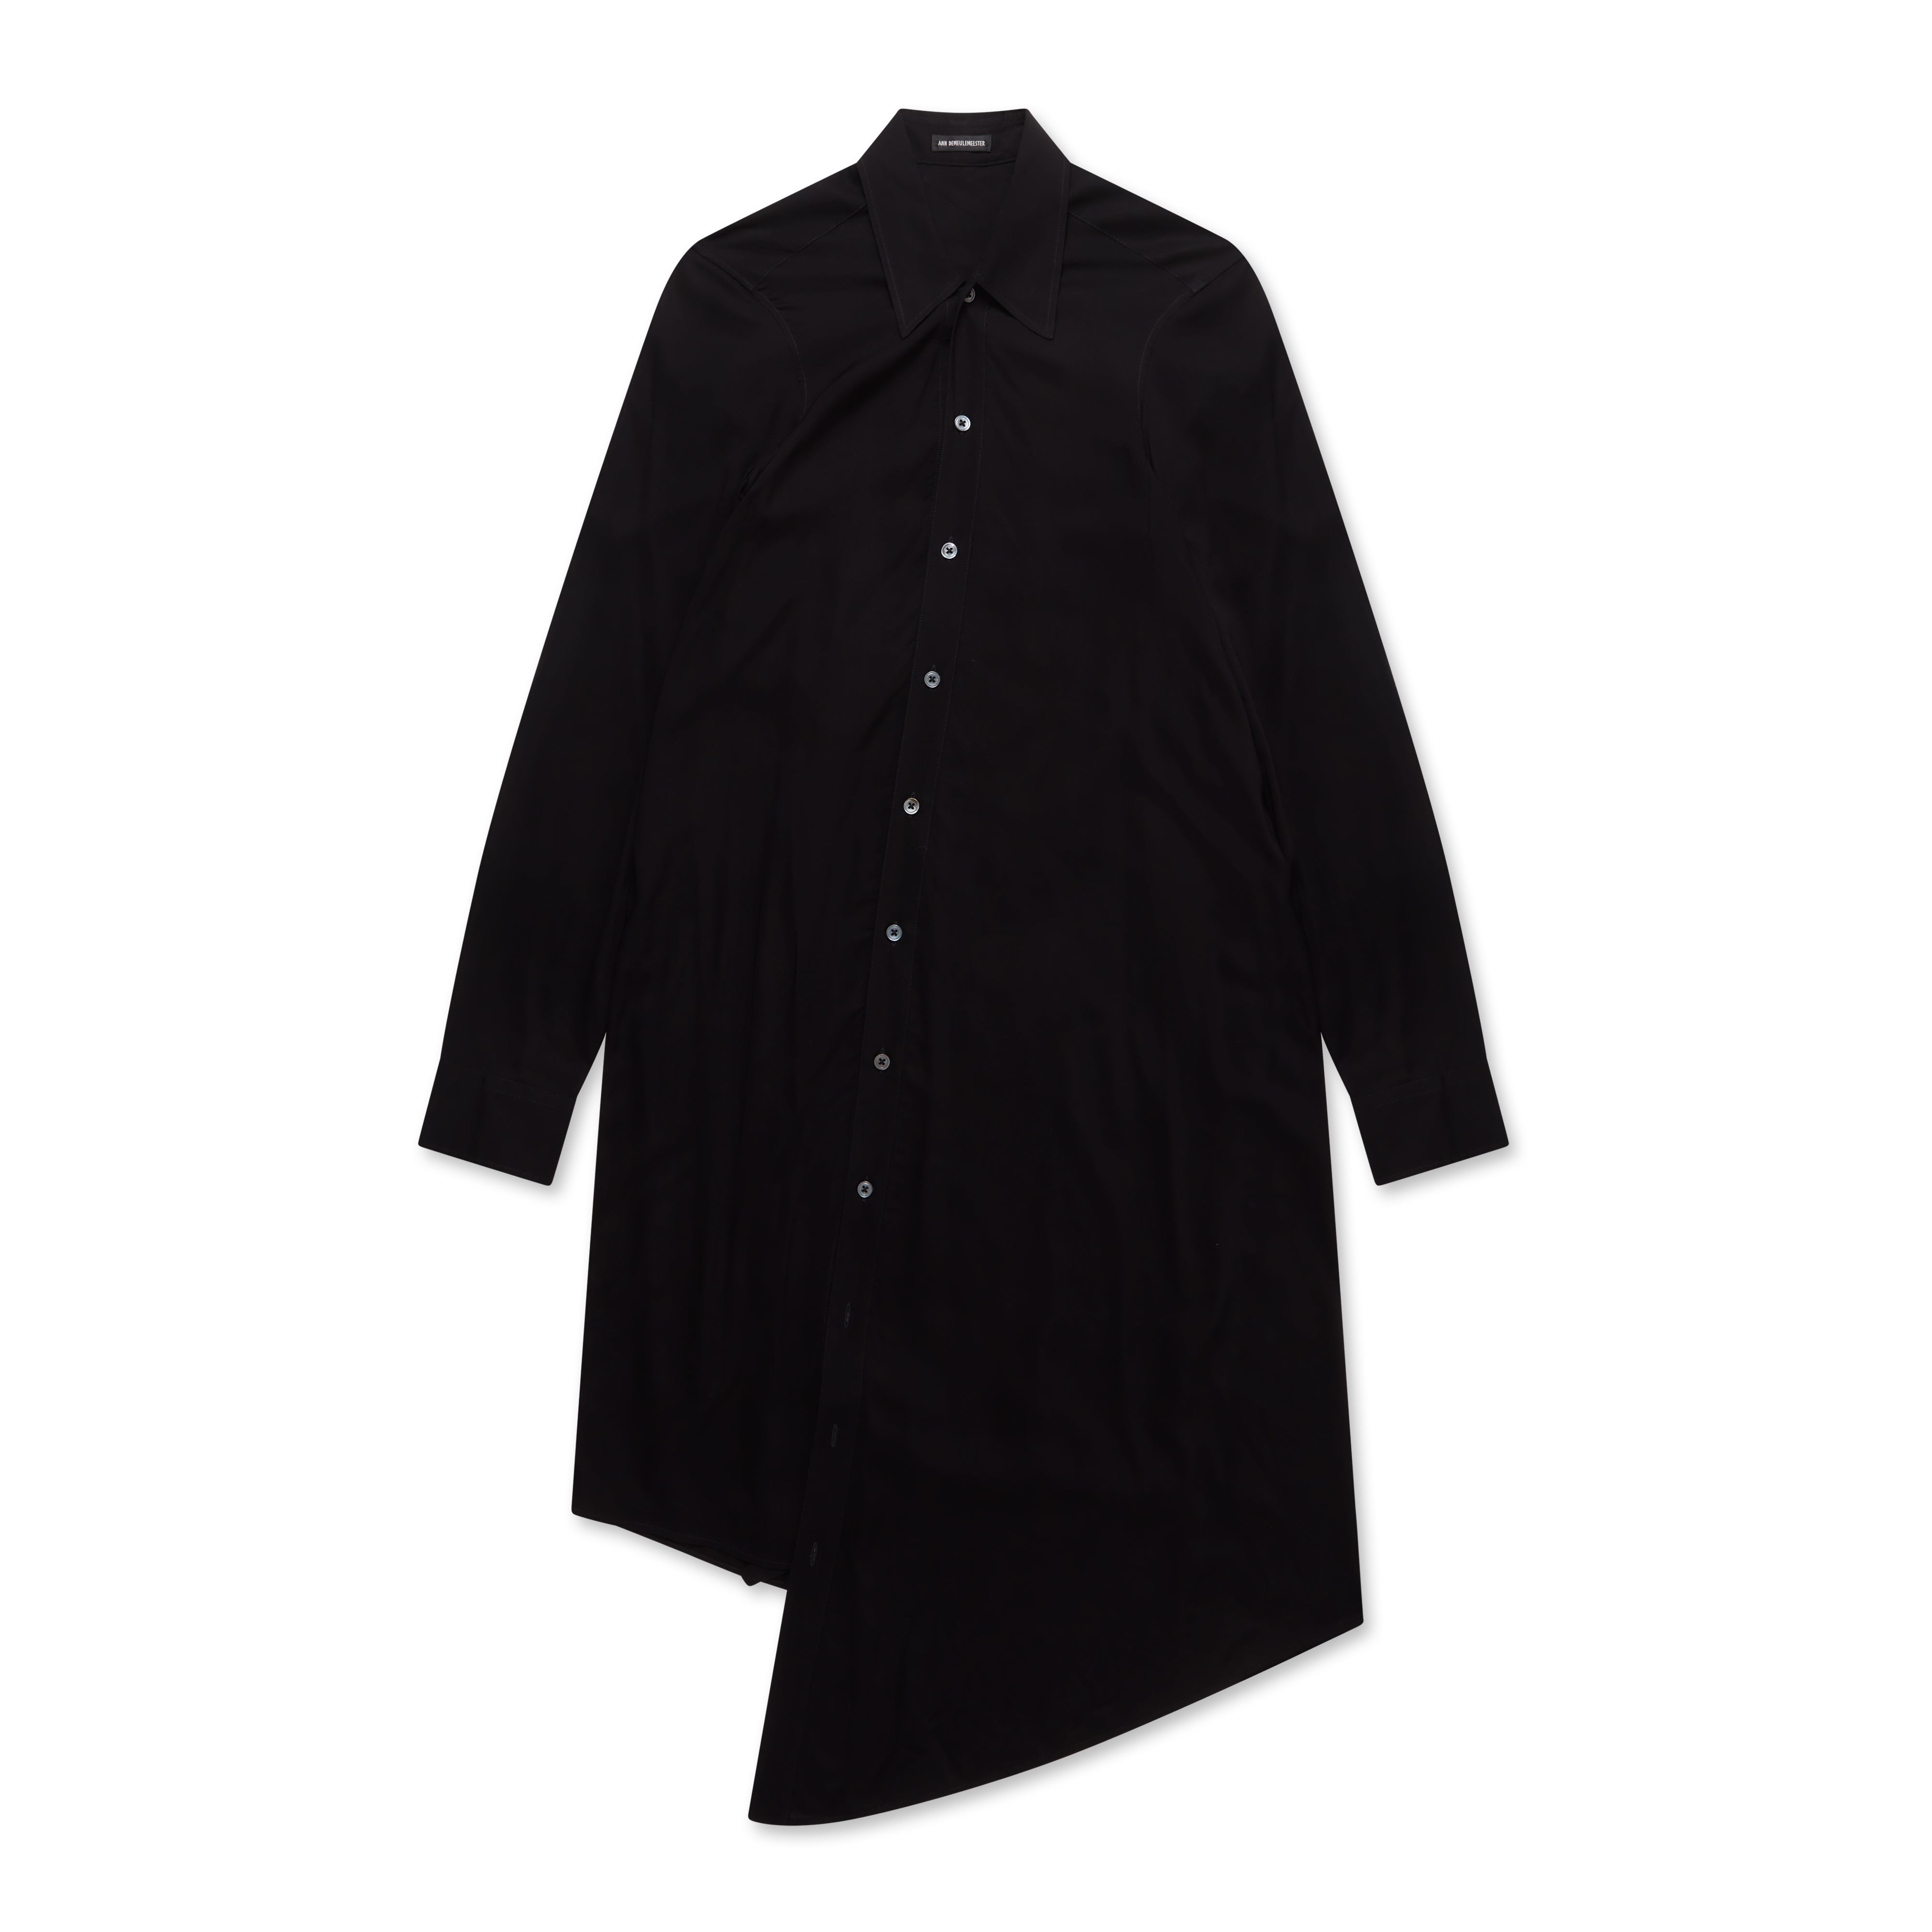 Ann Demeulemeester Women's Francoise Rayon Shirt (Black) | Dover Street ...